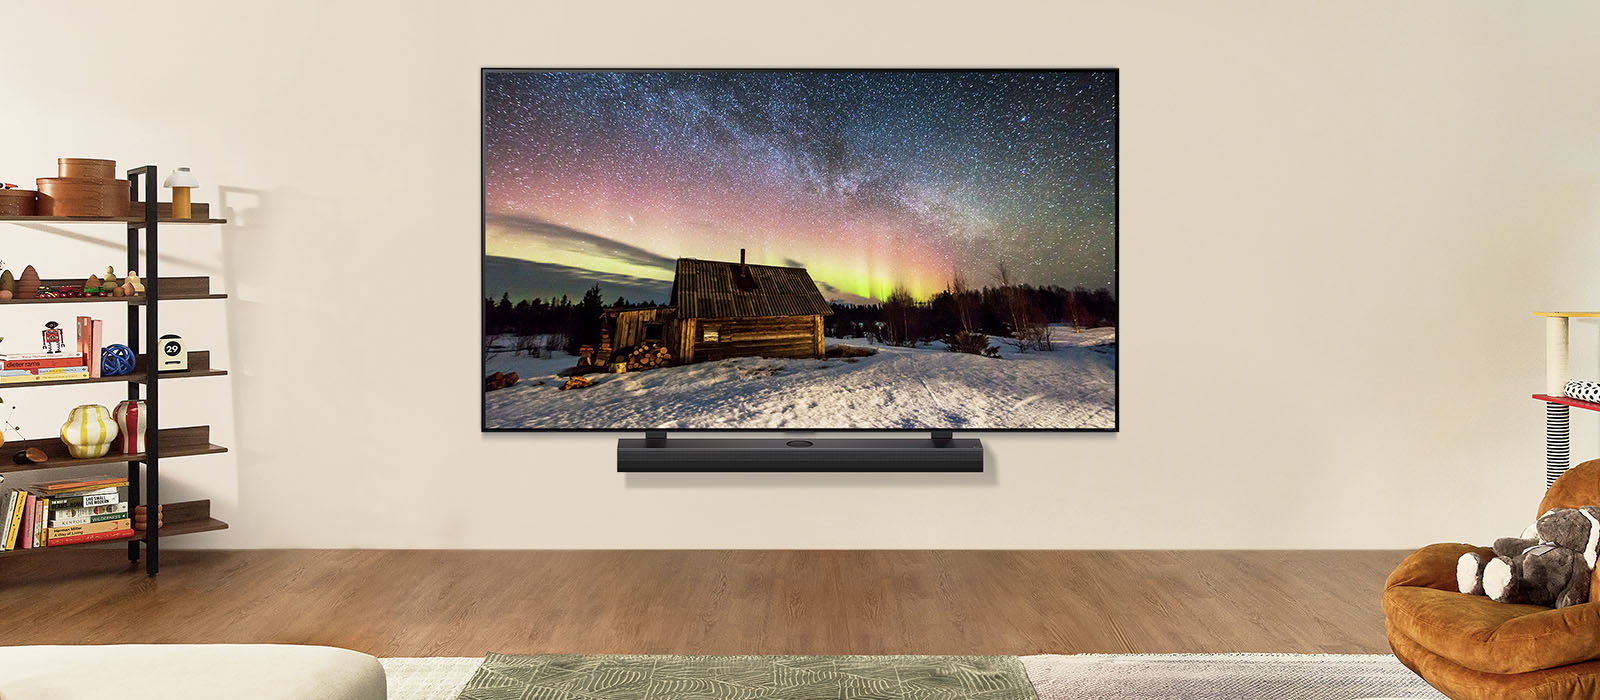 白天時位於現代客廳空間的 LG TV 和 LG Soundbar。以理想亮度顯示極光的螢幕影像。